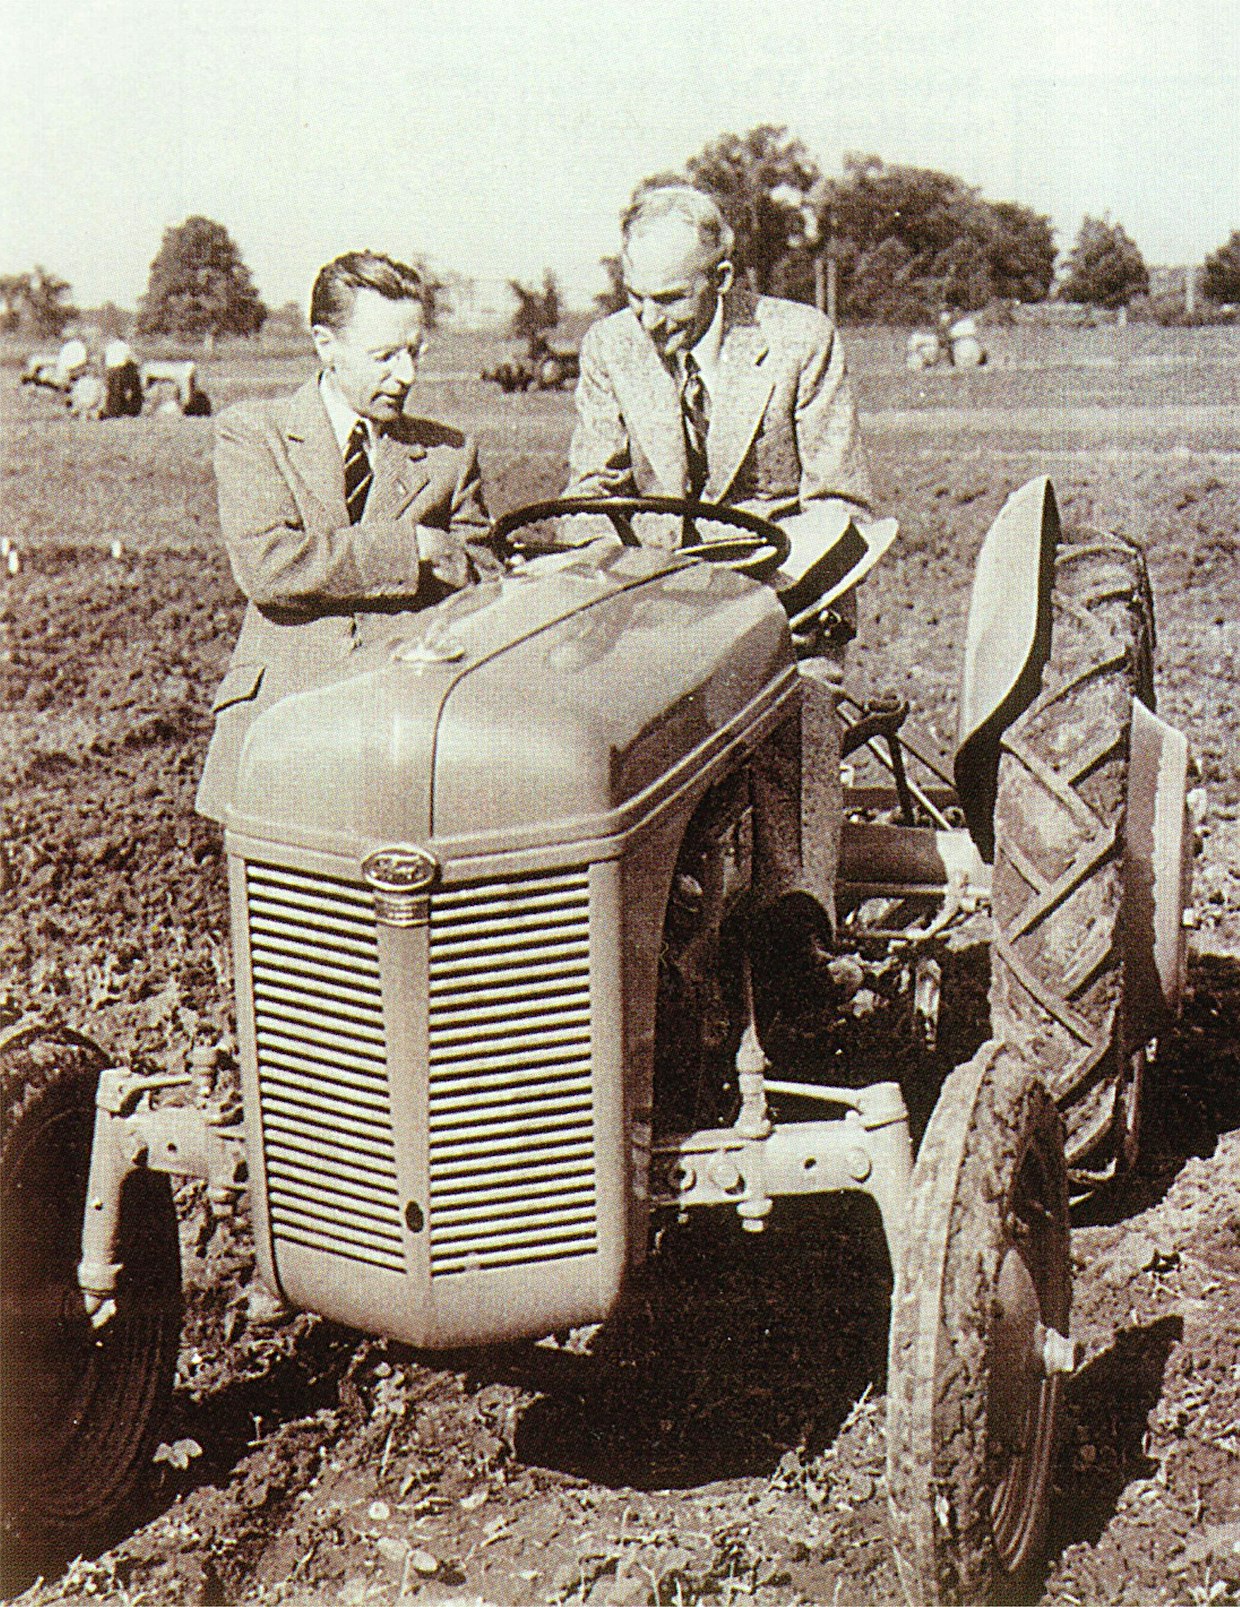 Yli 10 vuoden tauon jälkeen Ford aloitti traktorituotannon v.1939 uudella 9N-mallilla, jossa oli Fergusonin hydraulinen nostolaite painonsiirtojärjestelmineen. Yhteistyö päättyi 8 vuotta myöhemmin, välirikko johtui Fordille tappiollisesta ja Fergusonille hyvinkin tuottoisasta voitonjaosta. Kuvassa Harry Ferguson esittelee ohjaimissa olevalle Henry Fordille traktorin hienouksia. 